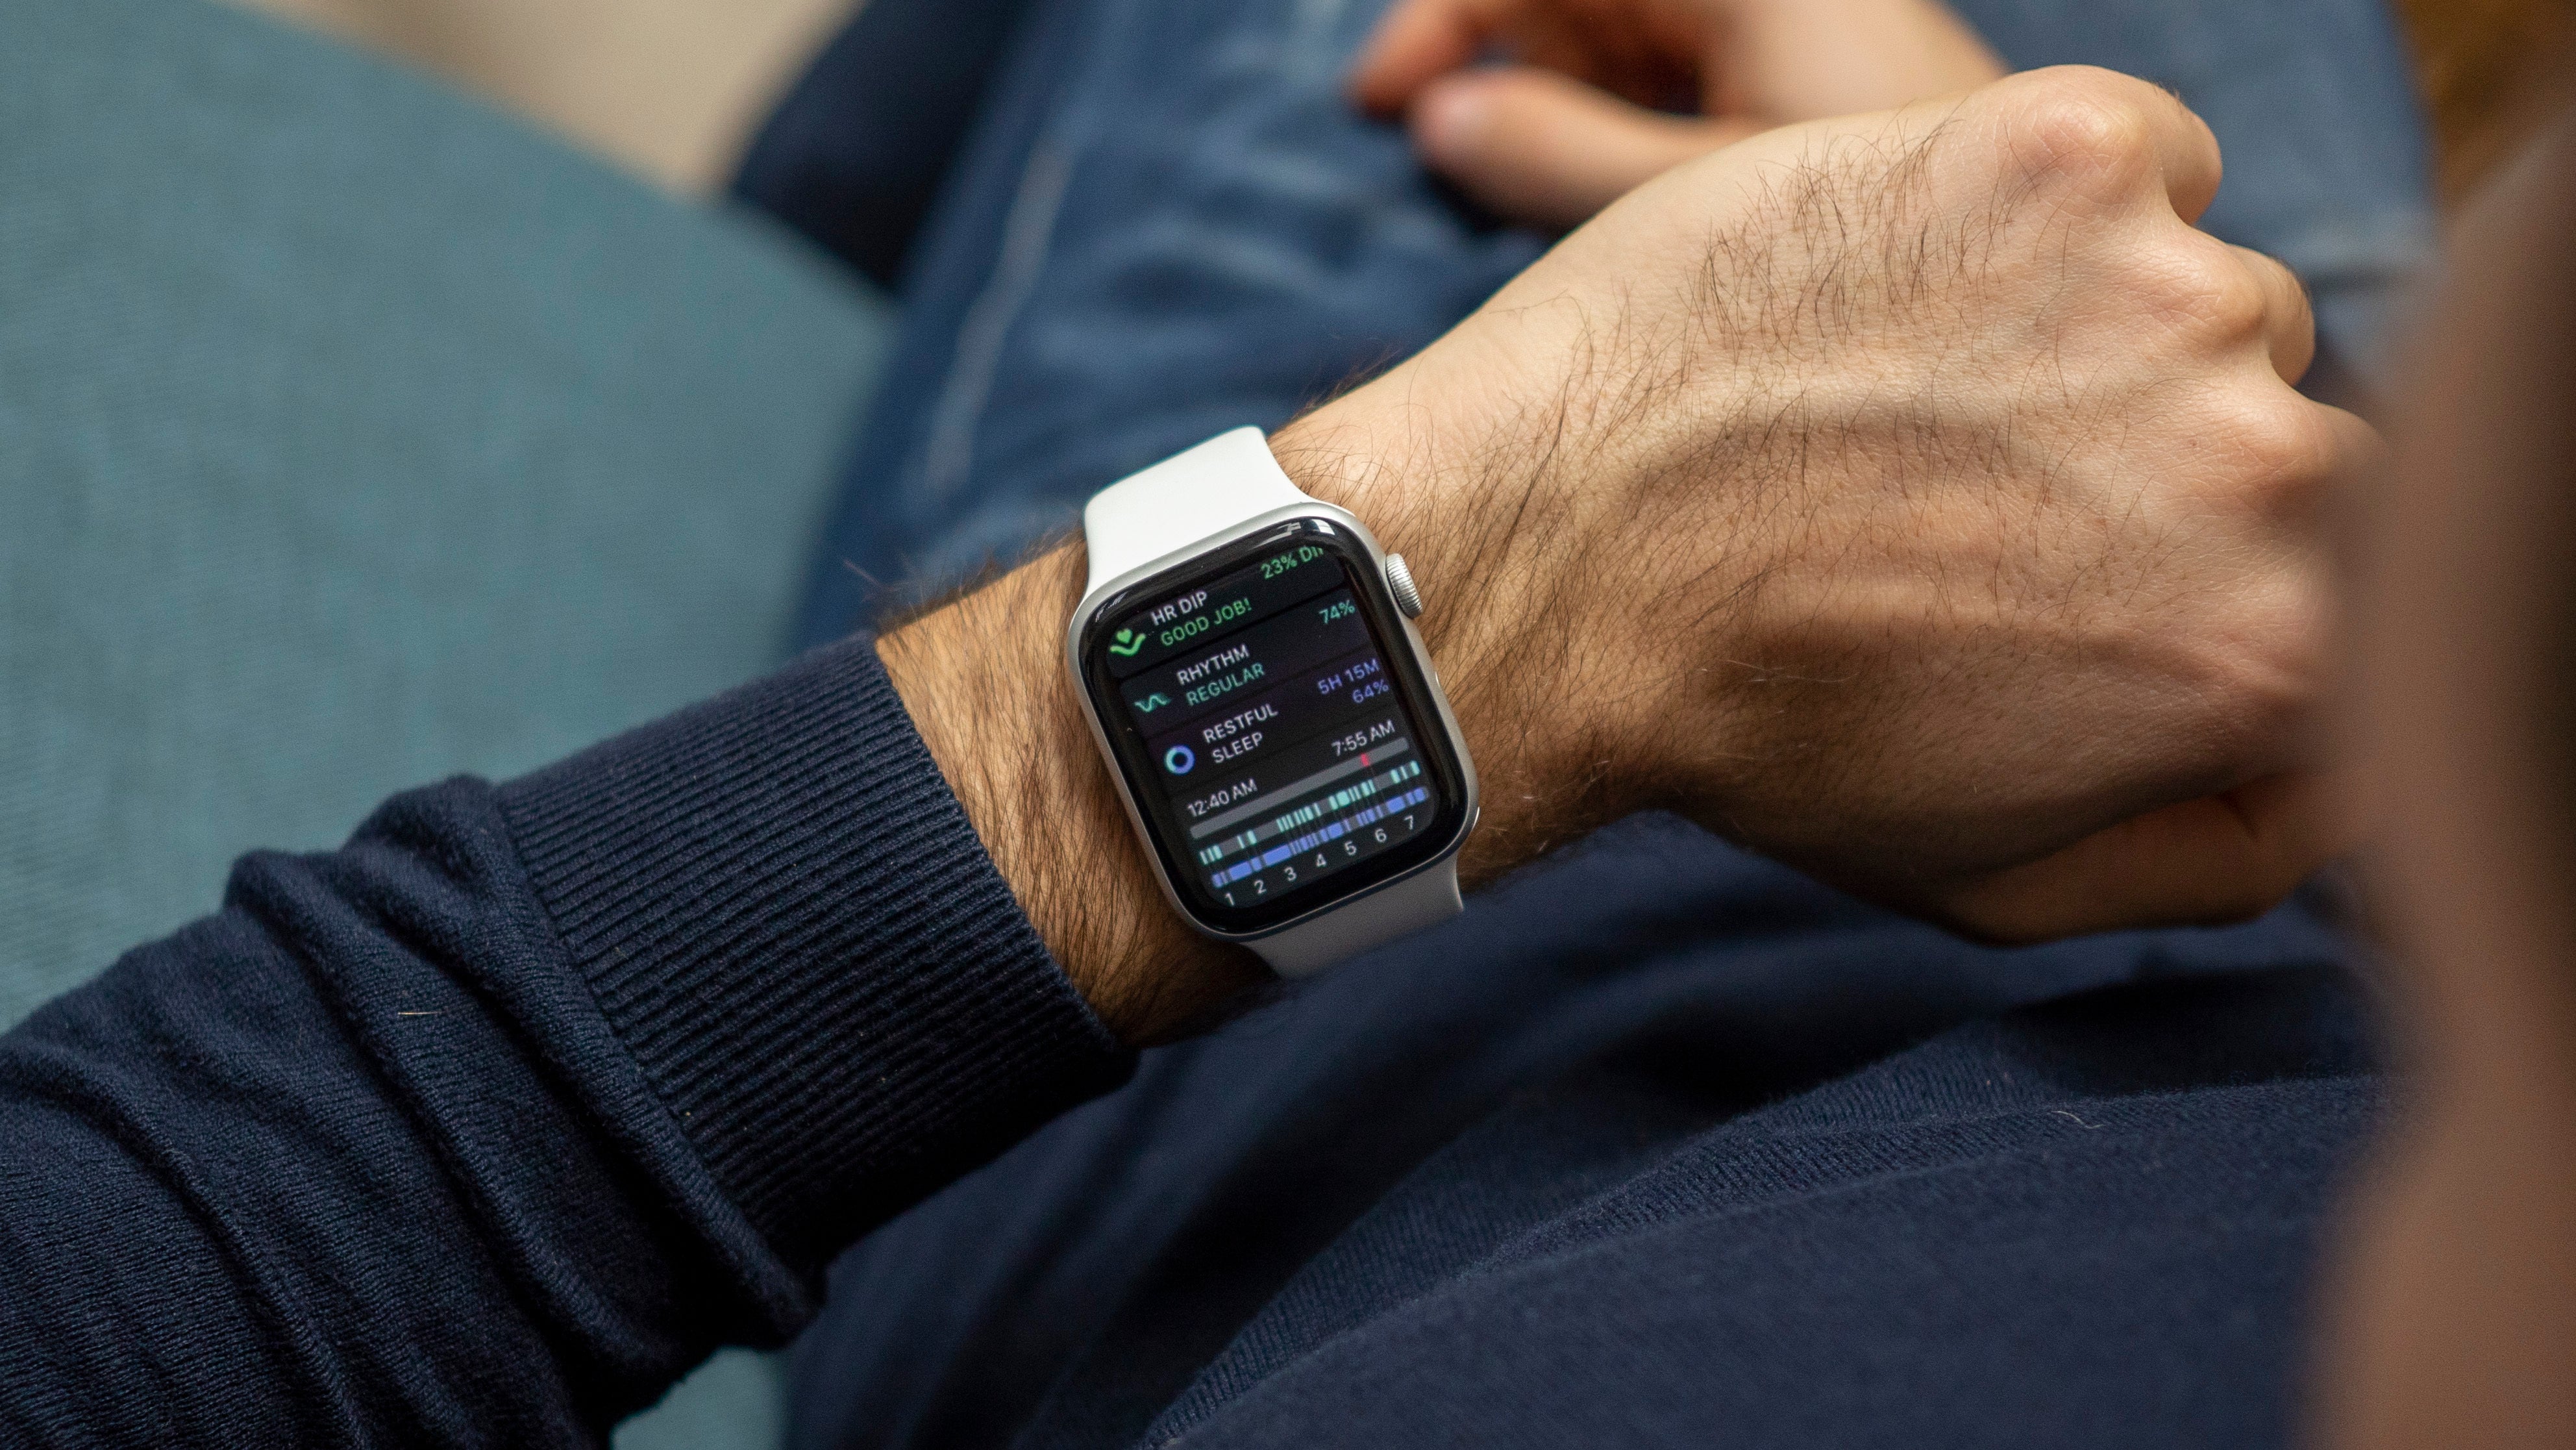 Apple series 6 44. Смарт часы эпл вотч 6. Apple watch 6 44 mm. Apple watch se 40mm. Apple watch Series 6 44mm.